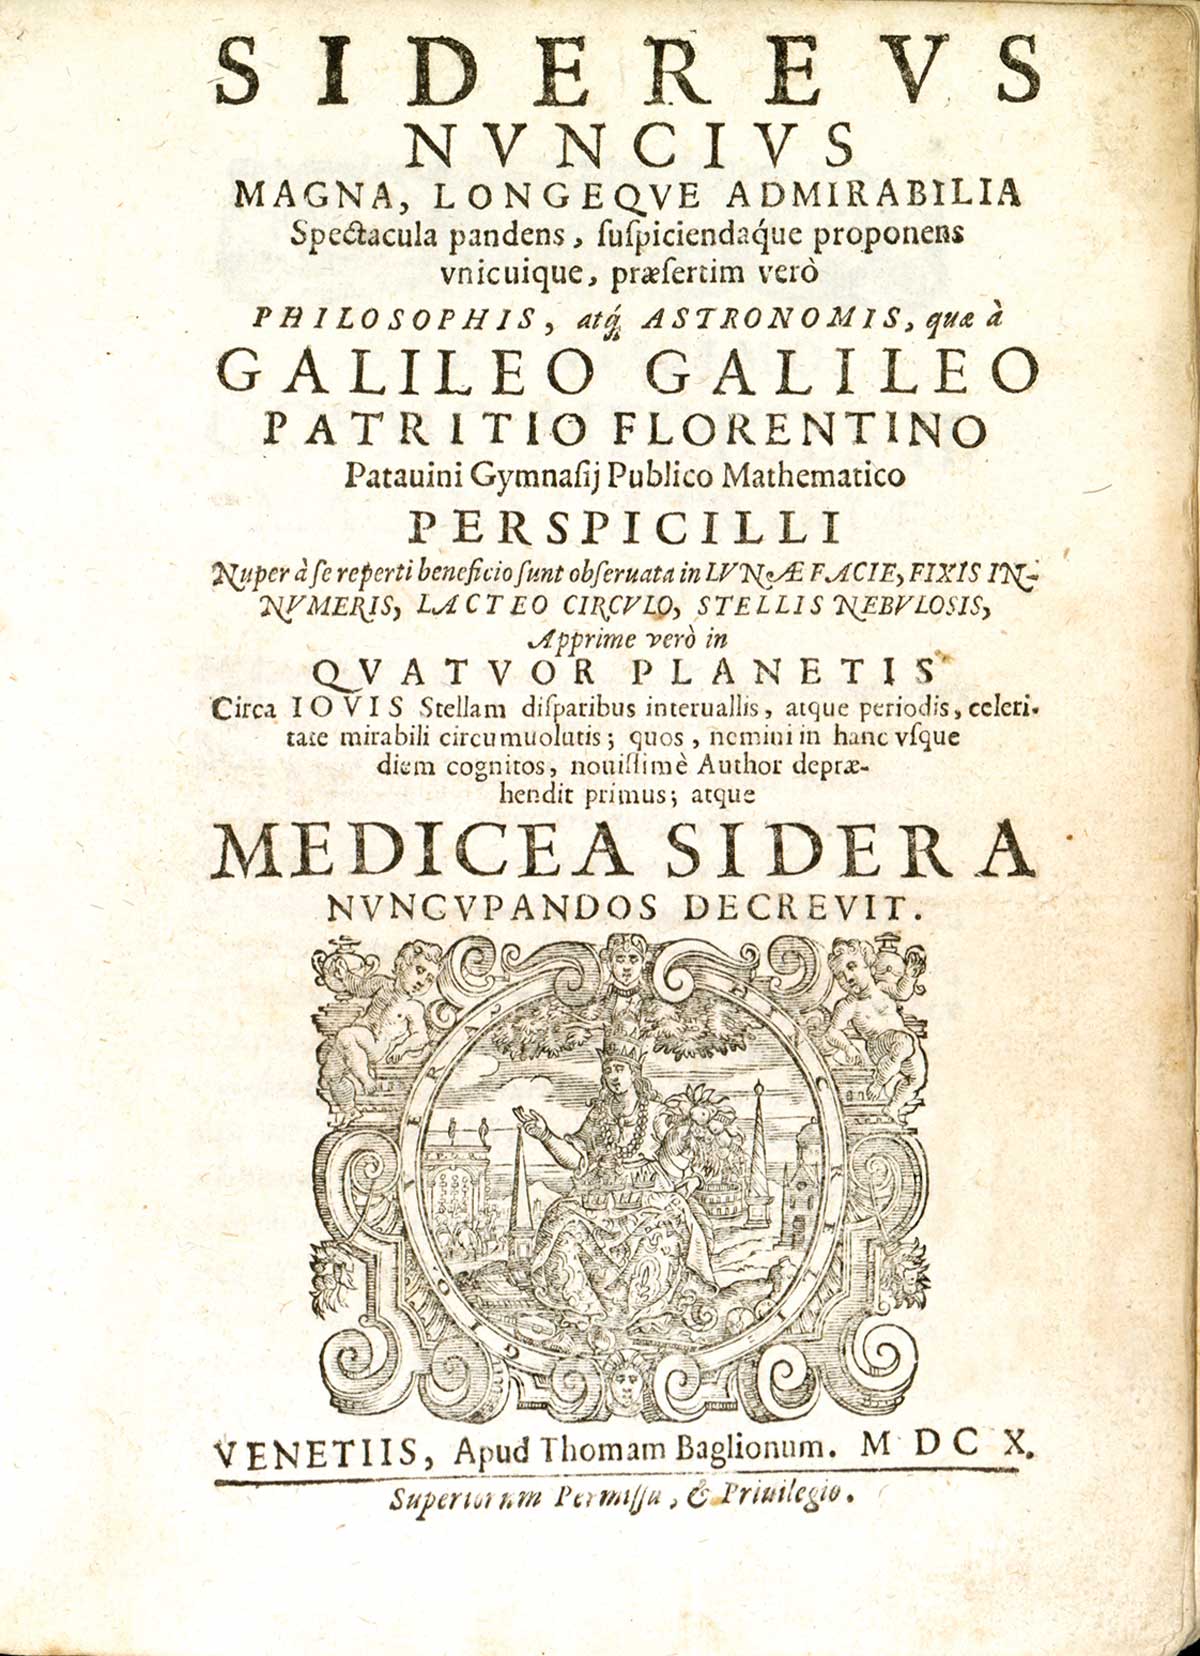 Sidereus Nuncius de Galileo